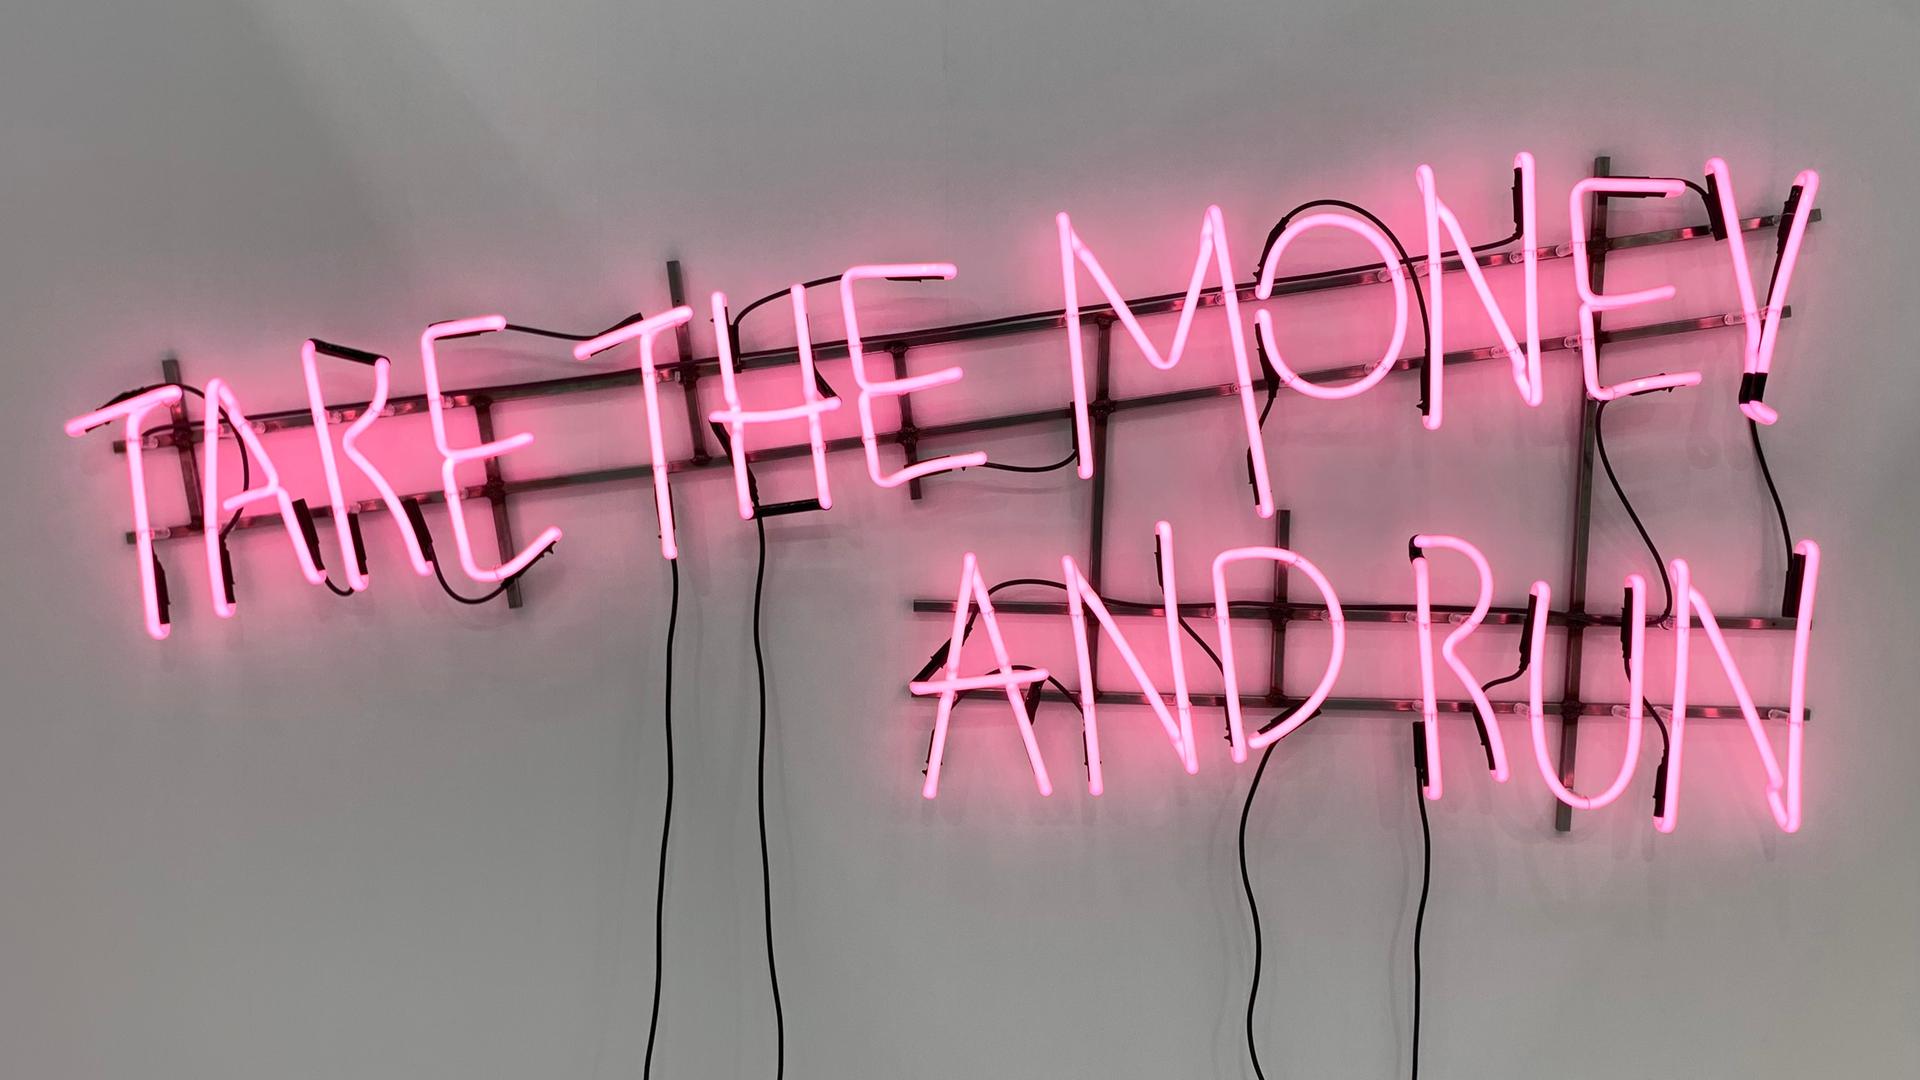 Das Werk „Ne travallez jemais“ (2022) von Kerim Seiler am Stand der Galerie Sexauer auf der Art Cologne. In rosa Buchstaben steht in mit Leuchtstoffröhren vor weisser Wand geschrieben "Take the money and run".